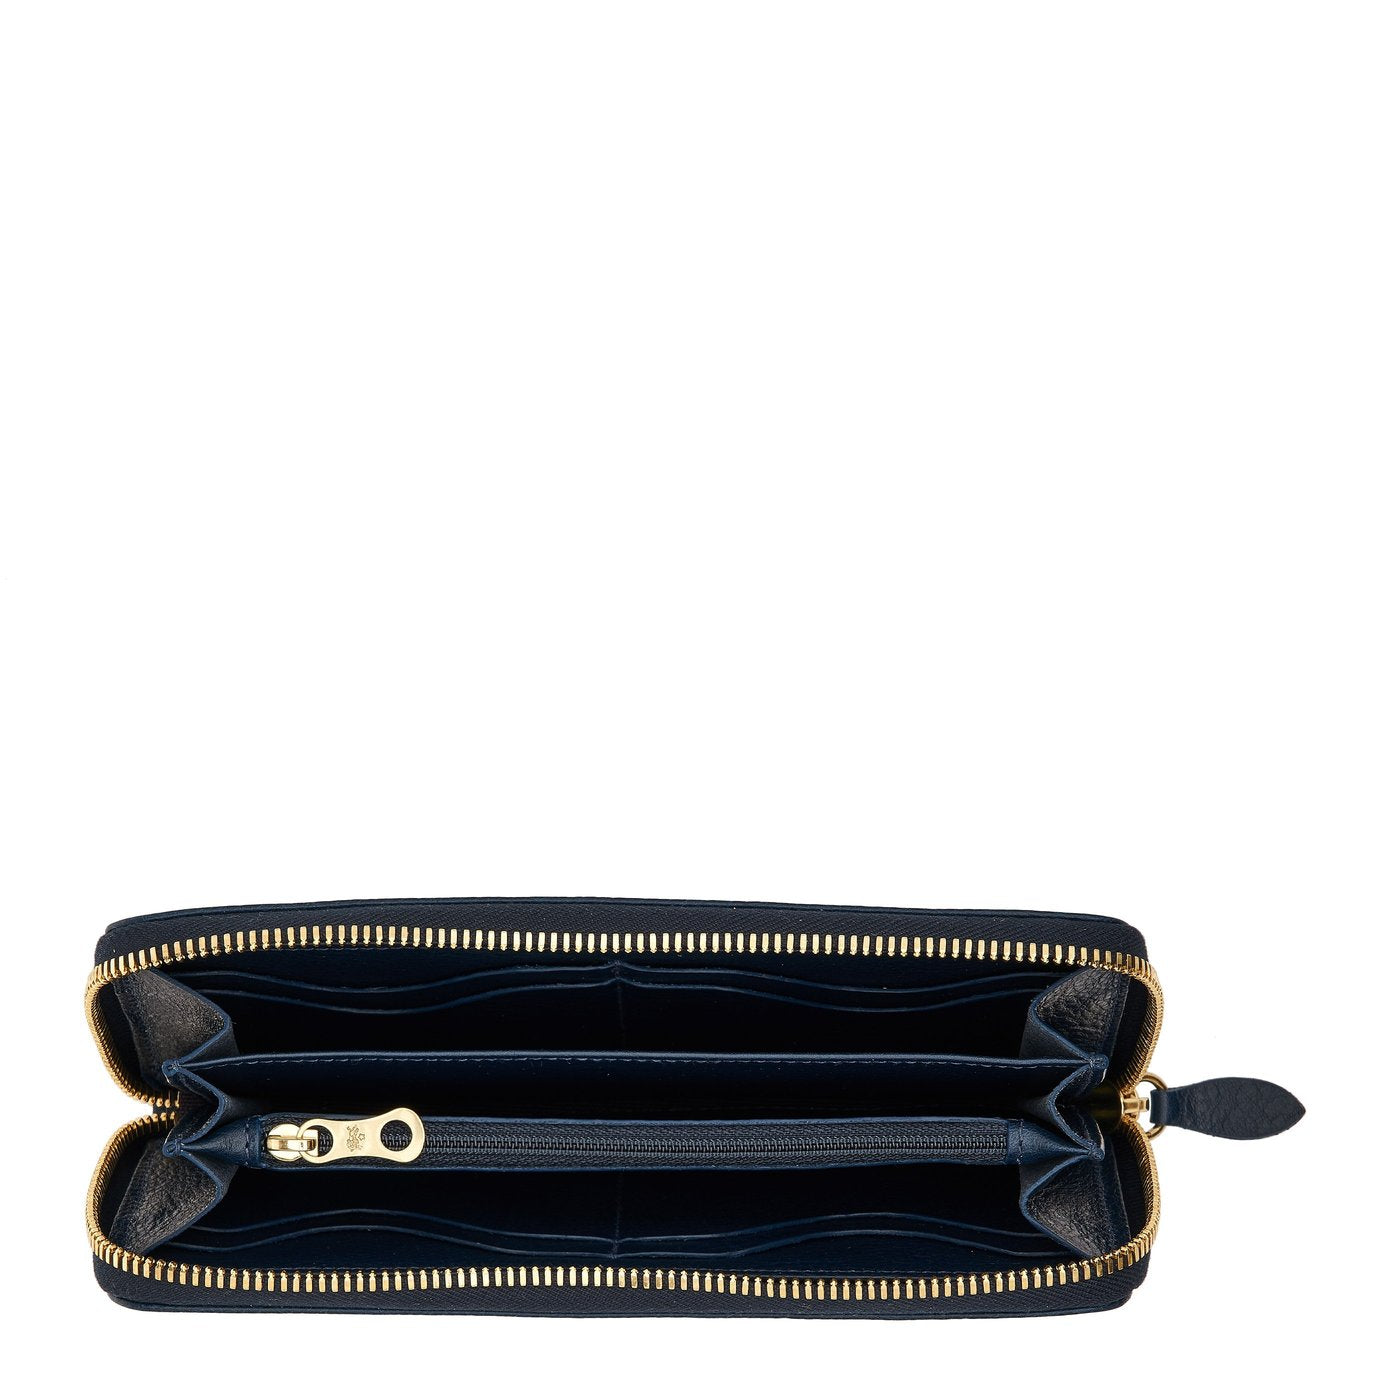 Ametista | Women's zip around wallet in calf leather color blue